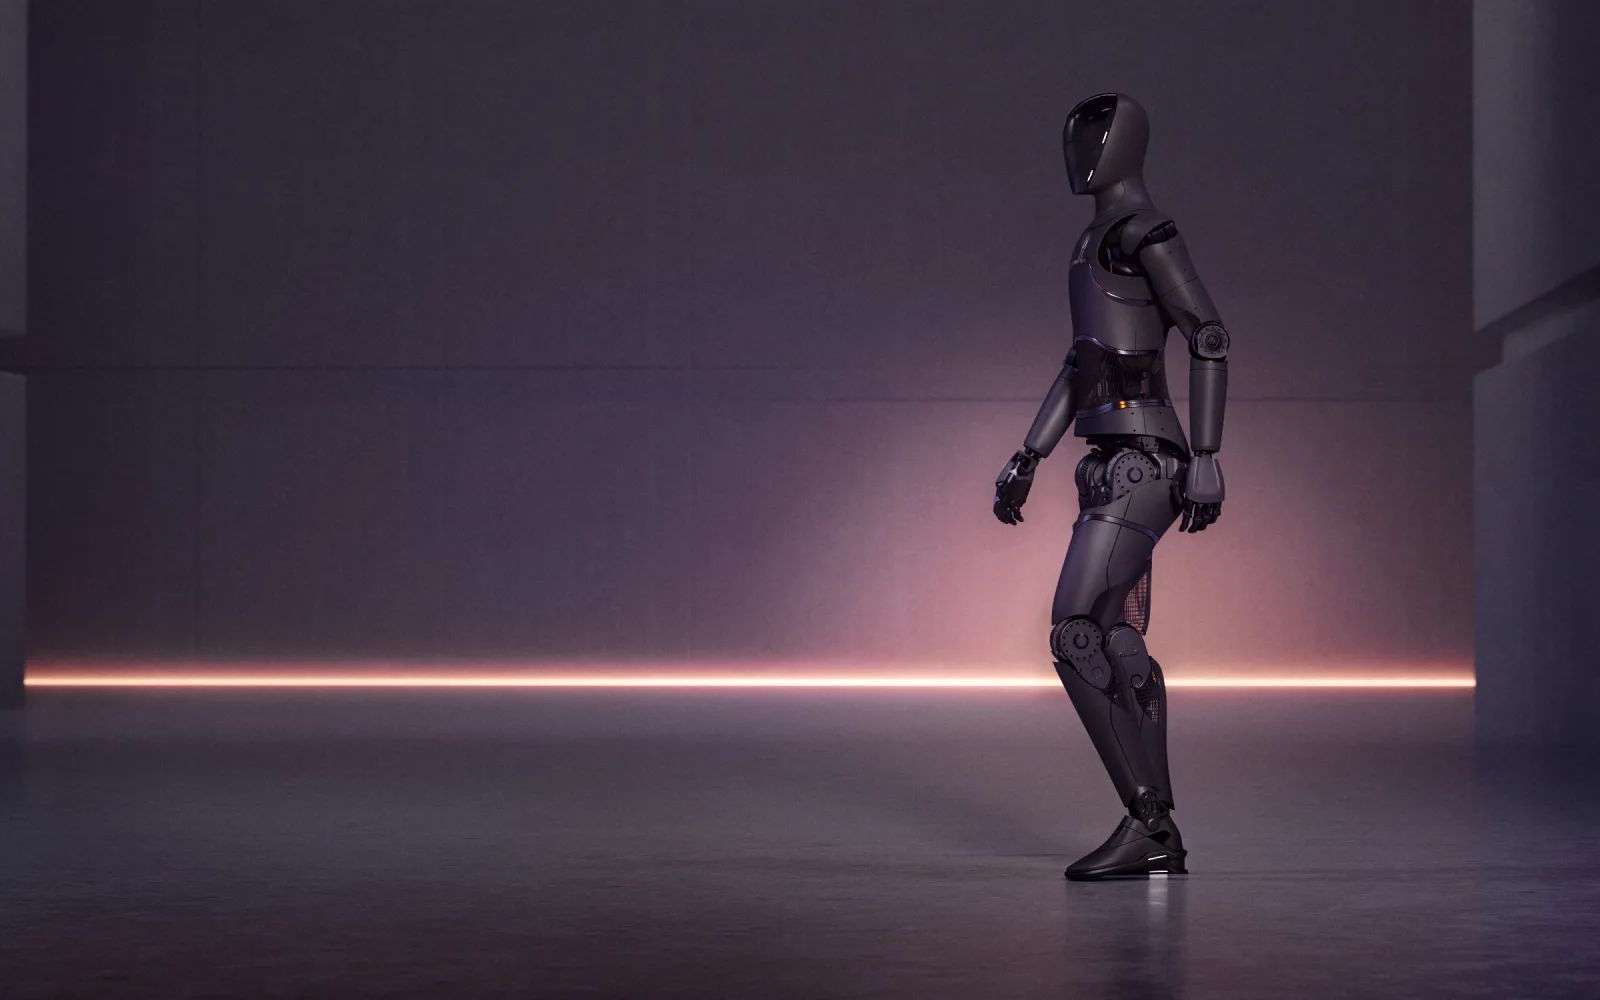 Voici Figure 01, le robot humanoïde le plus ressemblant à l'humain jamais construit